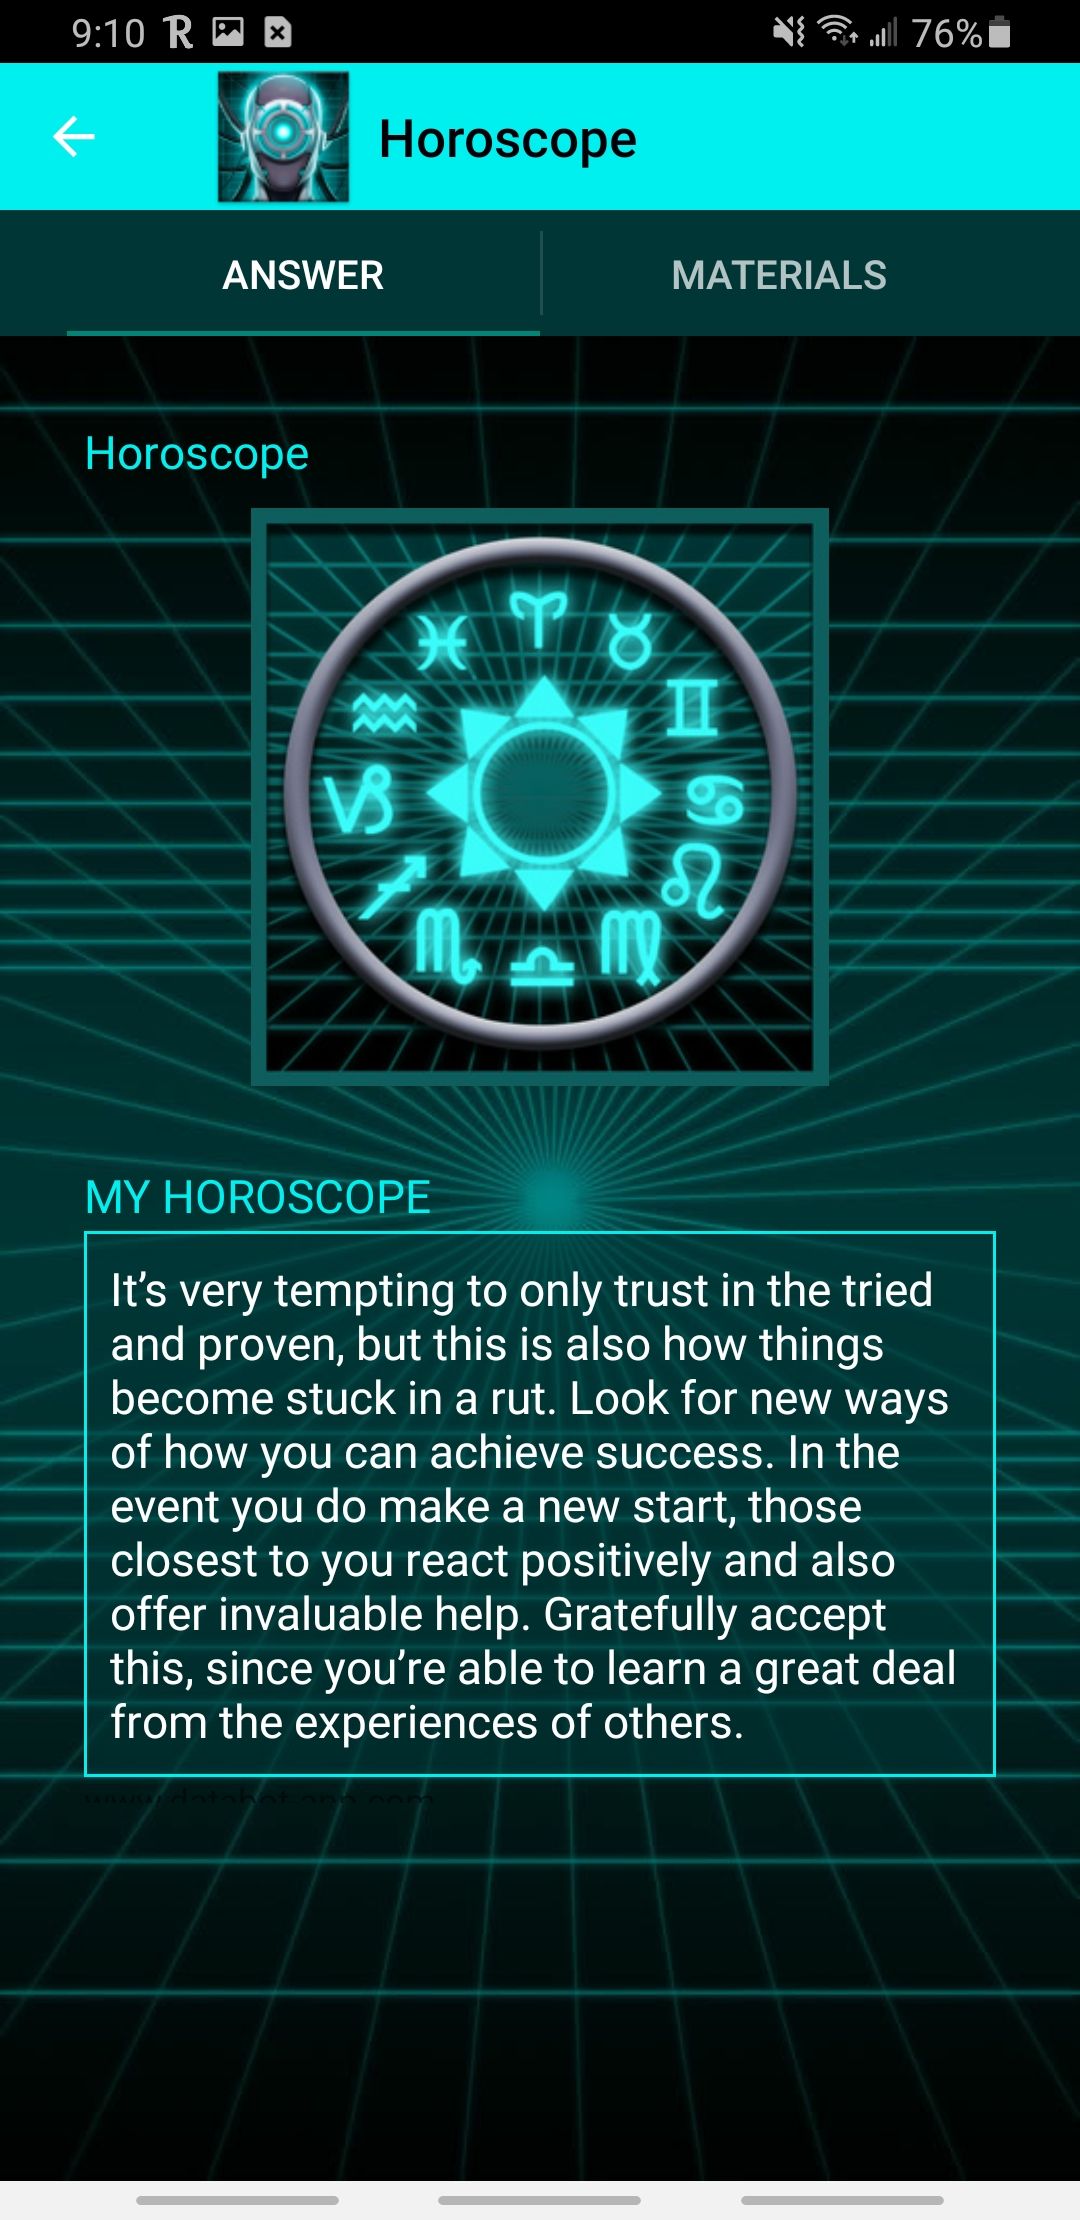 databot app telling horoscope